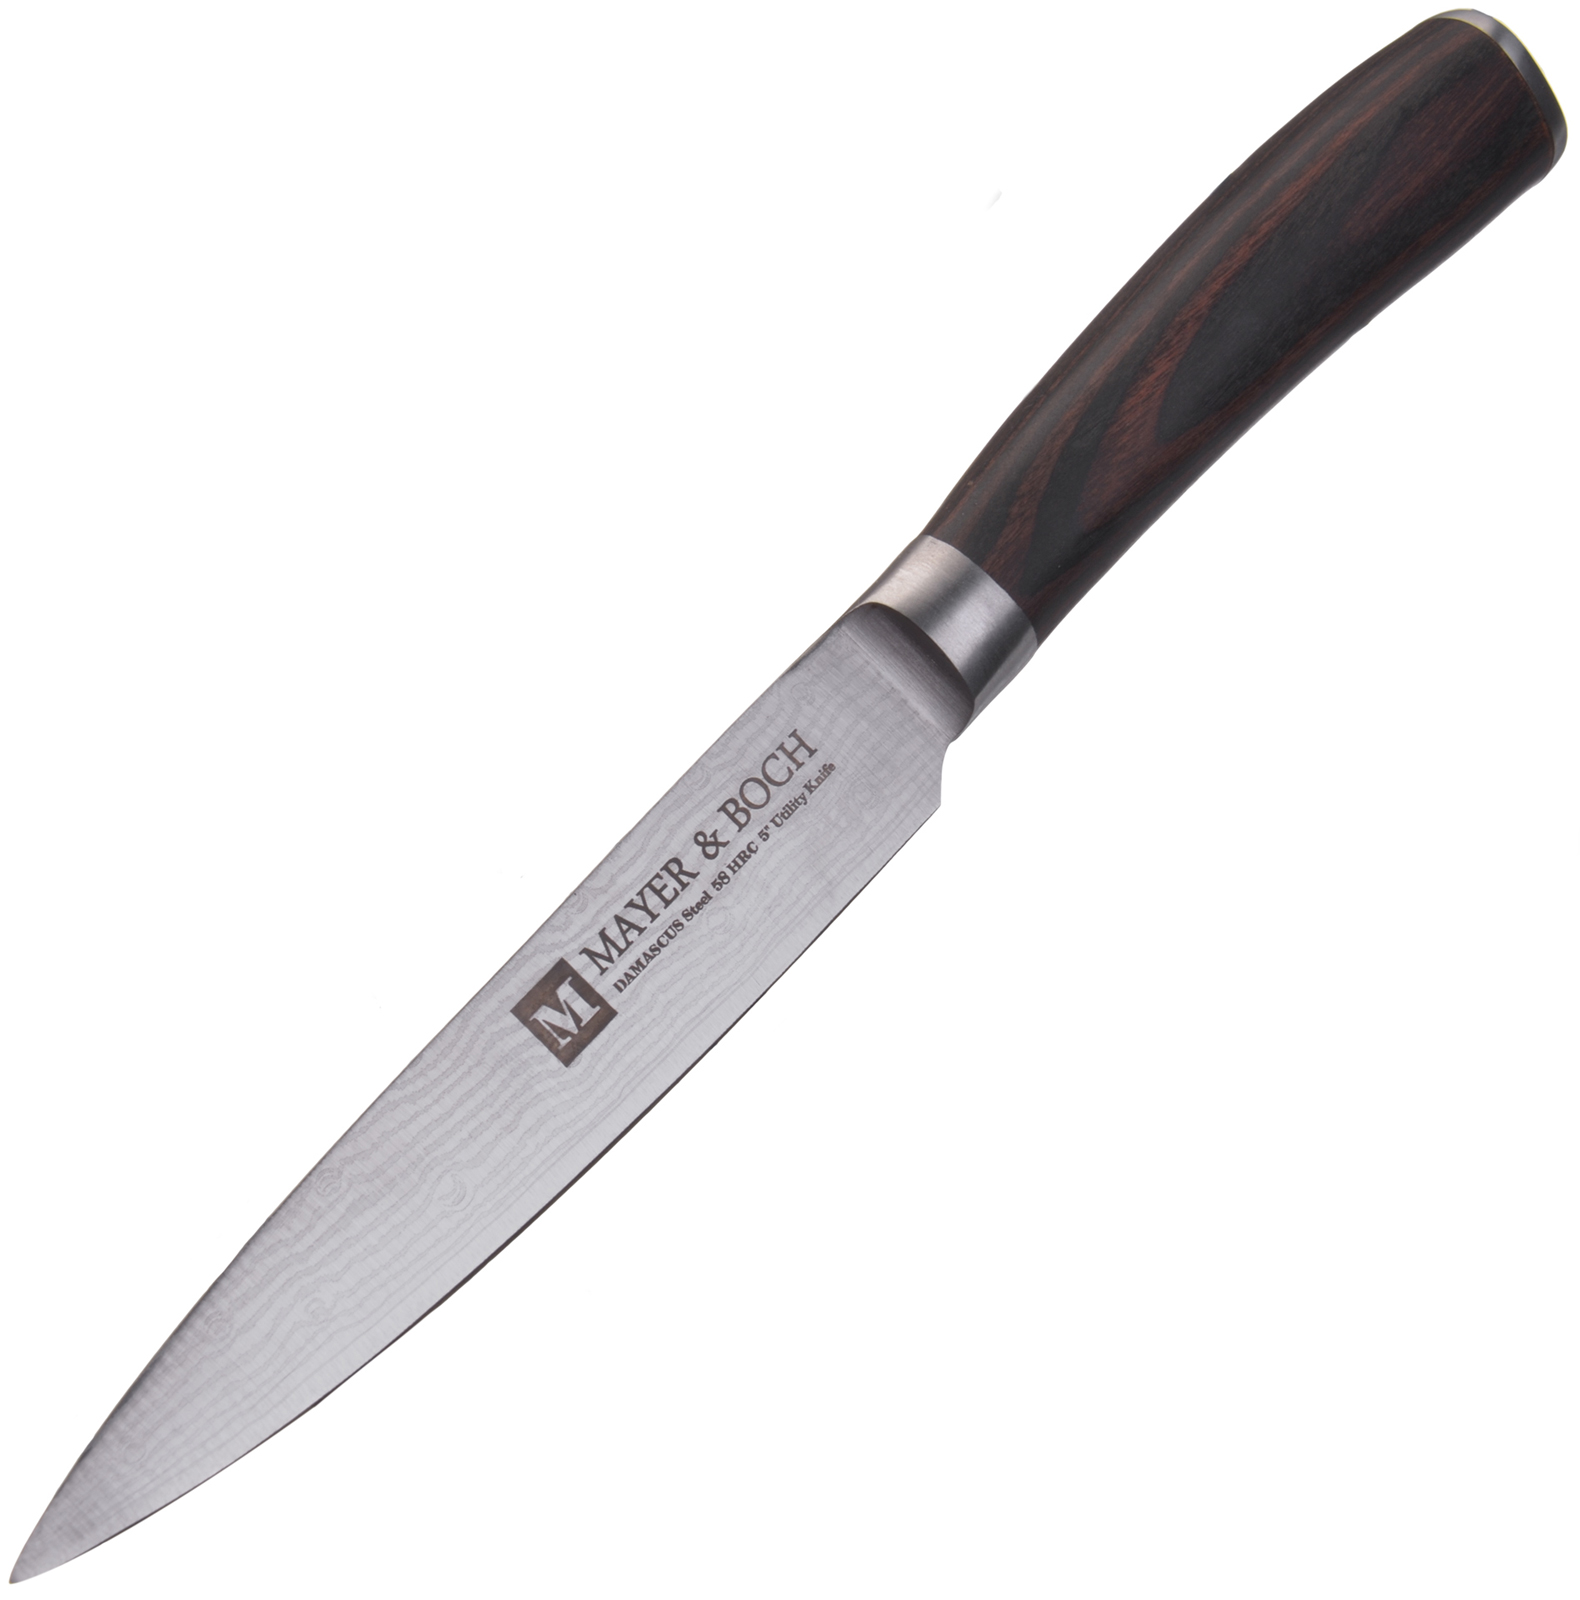 фото Нож универсальный Mayer & Boch Modest, цвет: коричневый, серебристый, длина лезвия 12,7 см